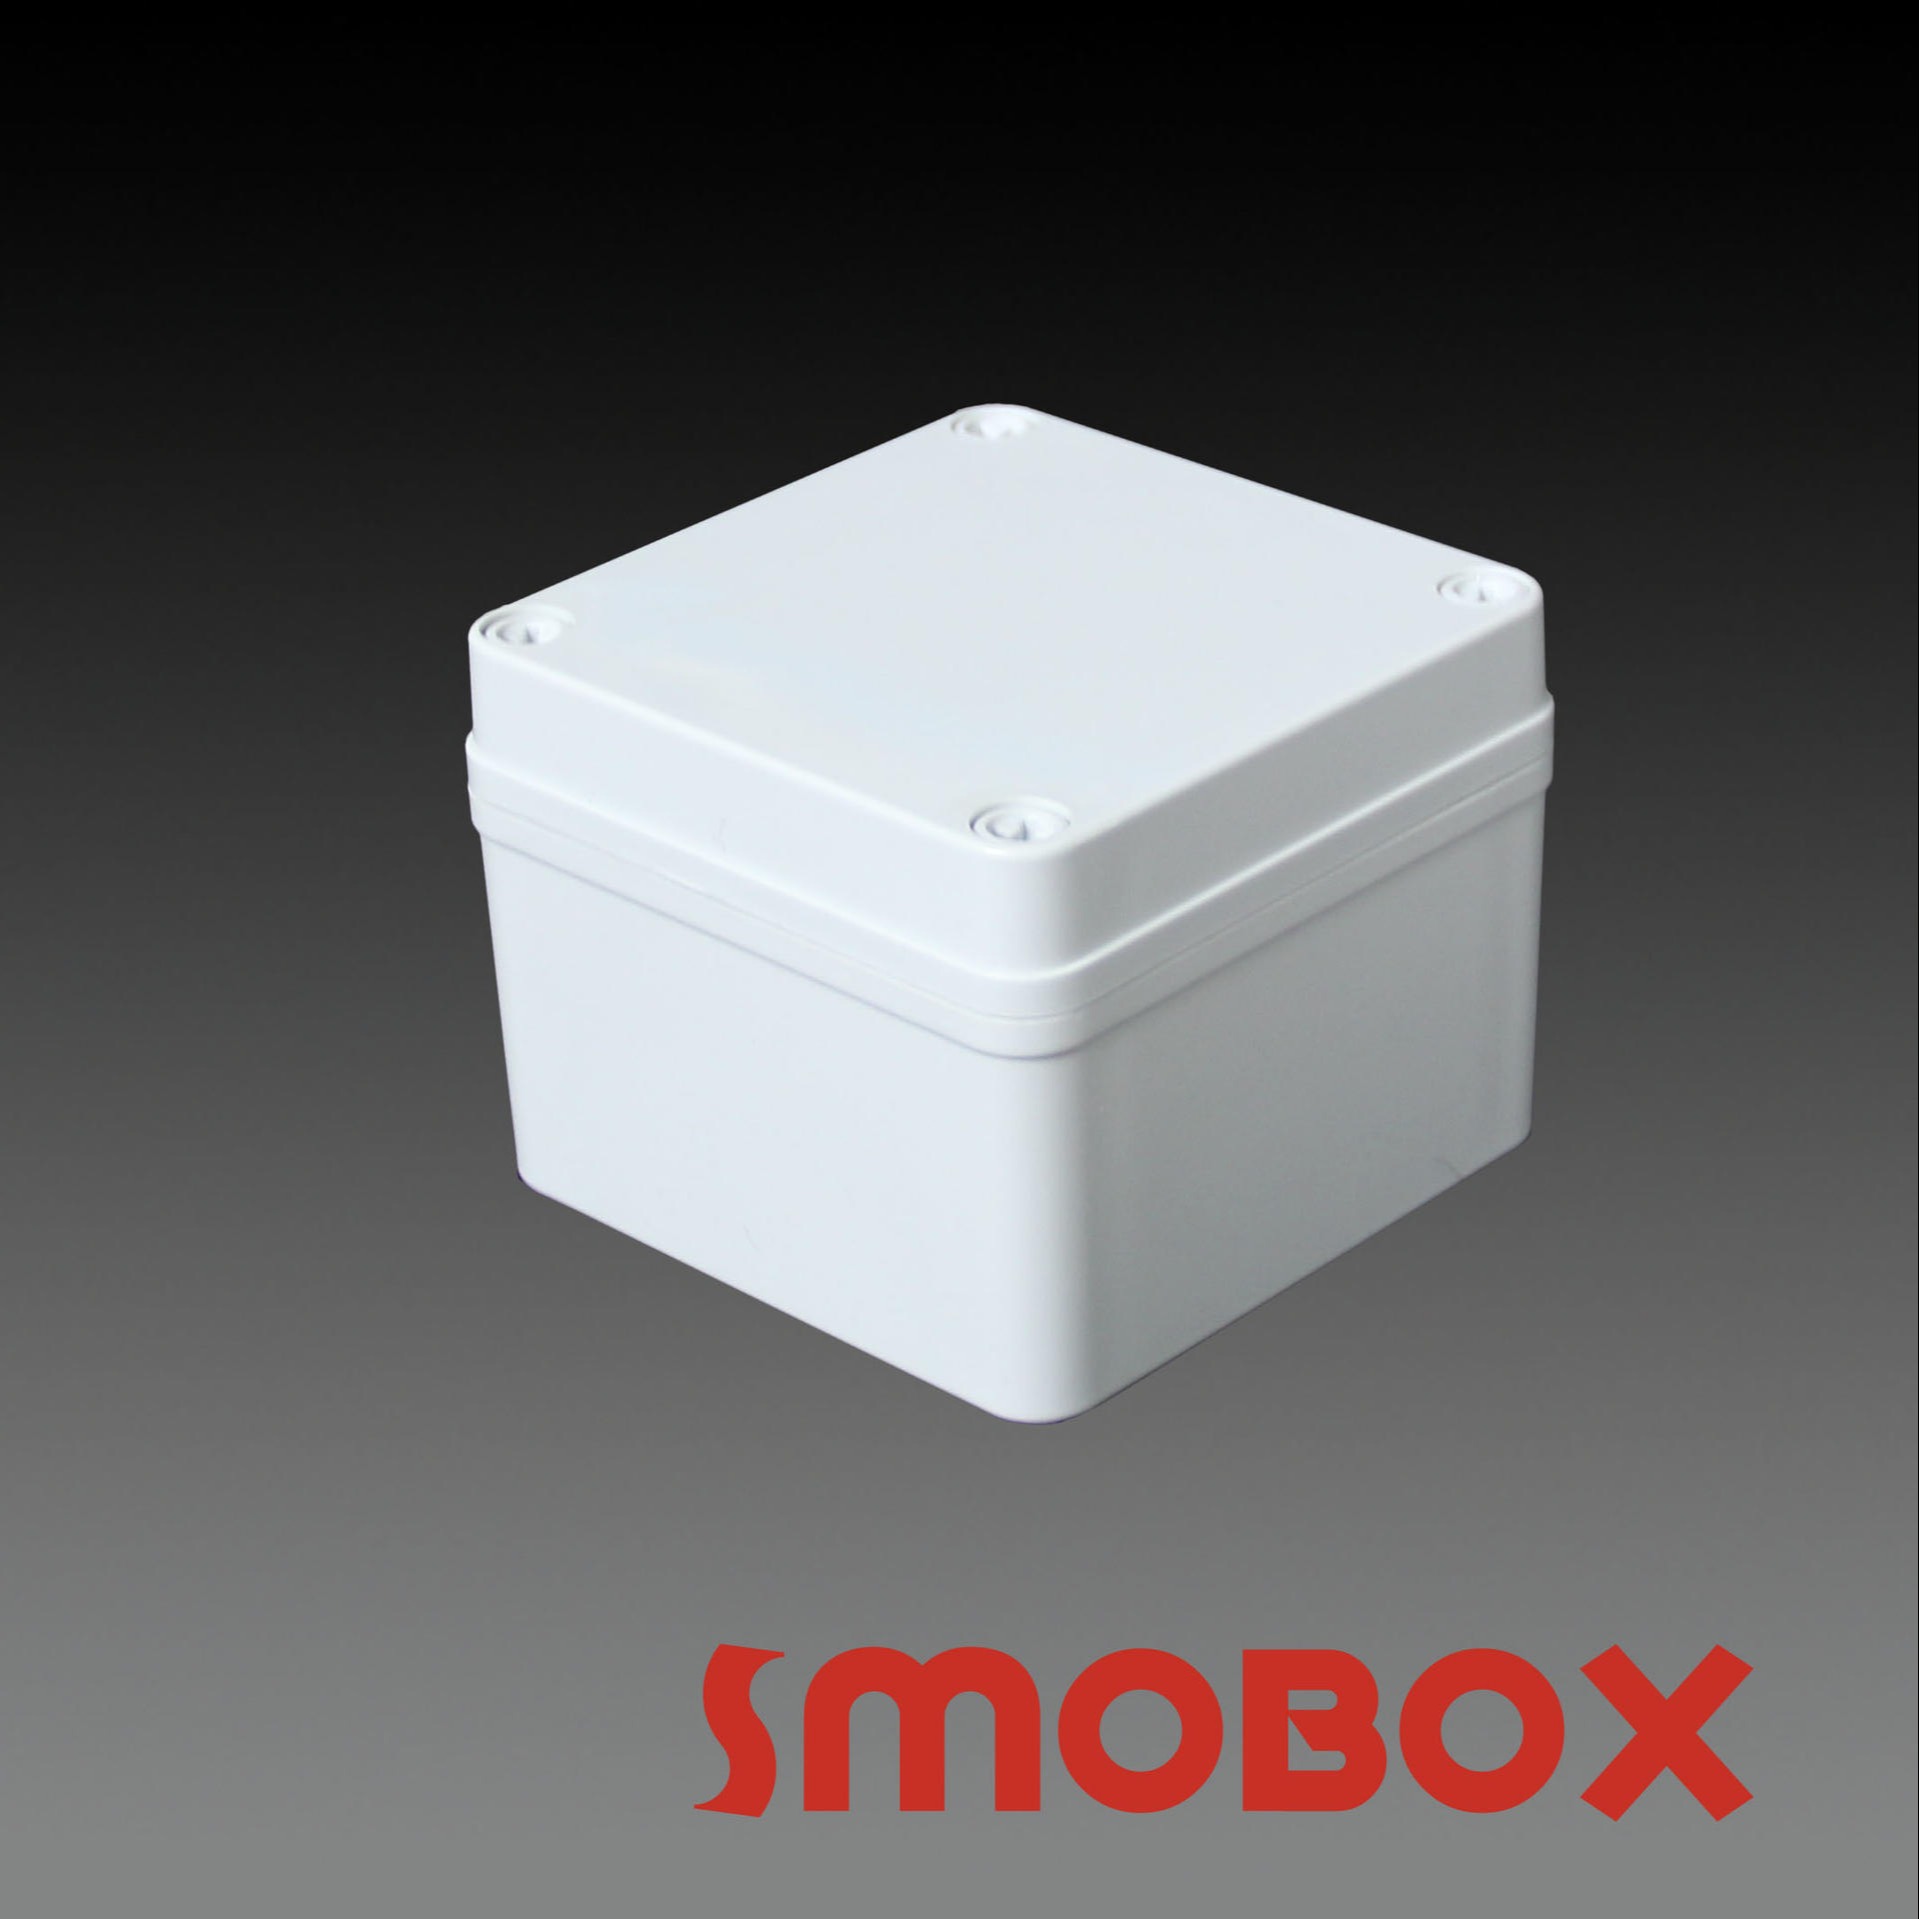 SMOBOX塑料接线箱LD-101007塑料按钮盒 防水接线盒 仪器仪表外壳 可加工定制 室内室外可用